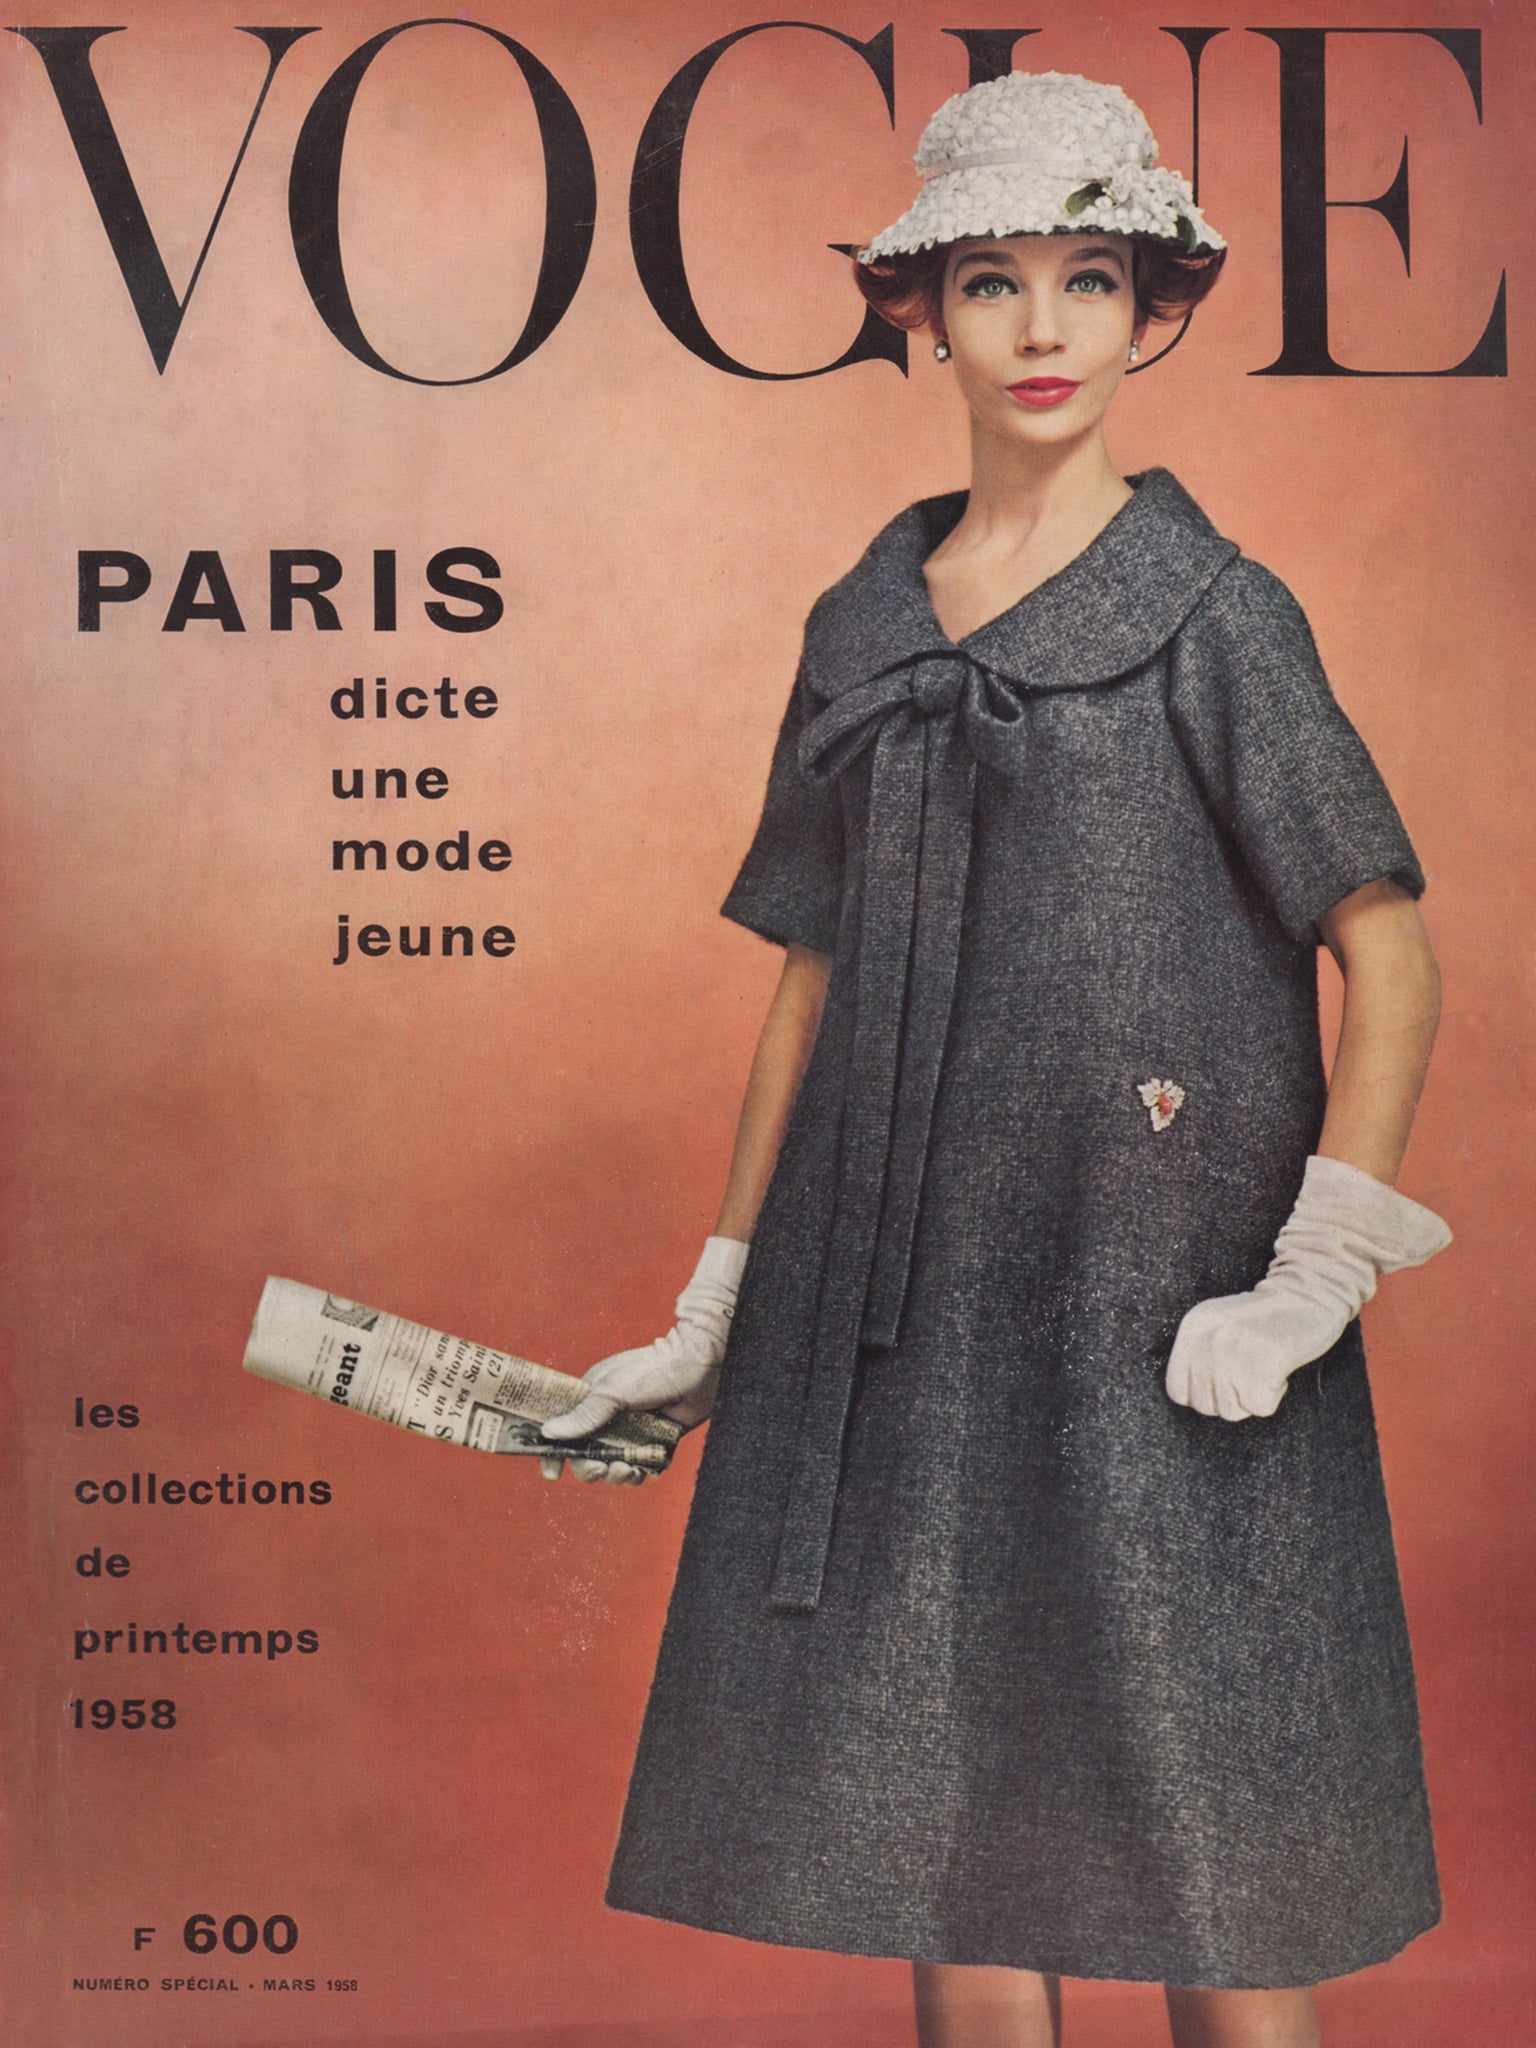 VOGUE PARIS March 1958